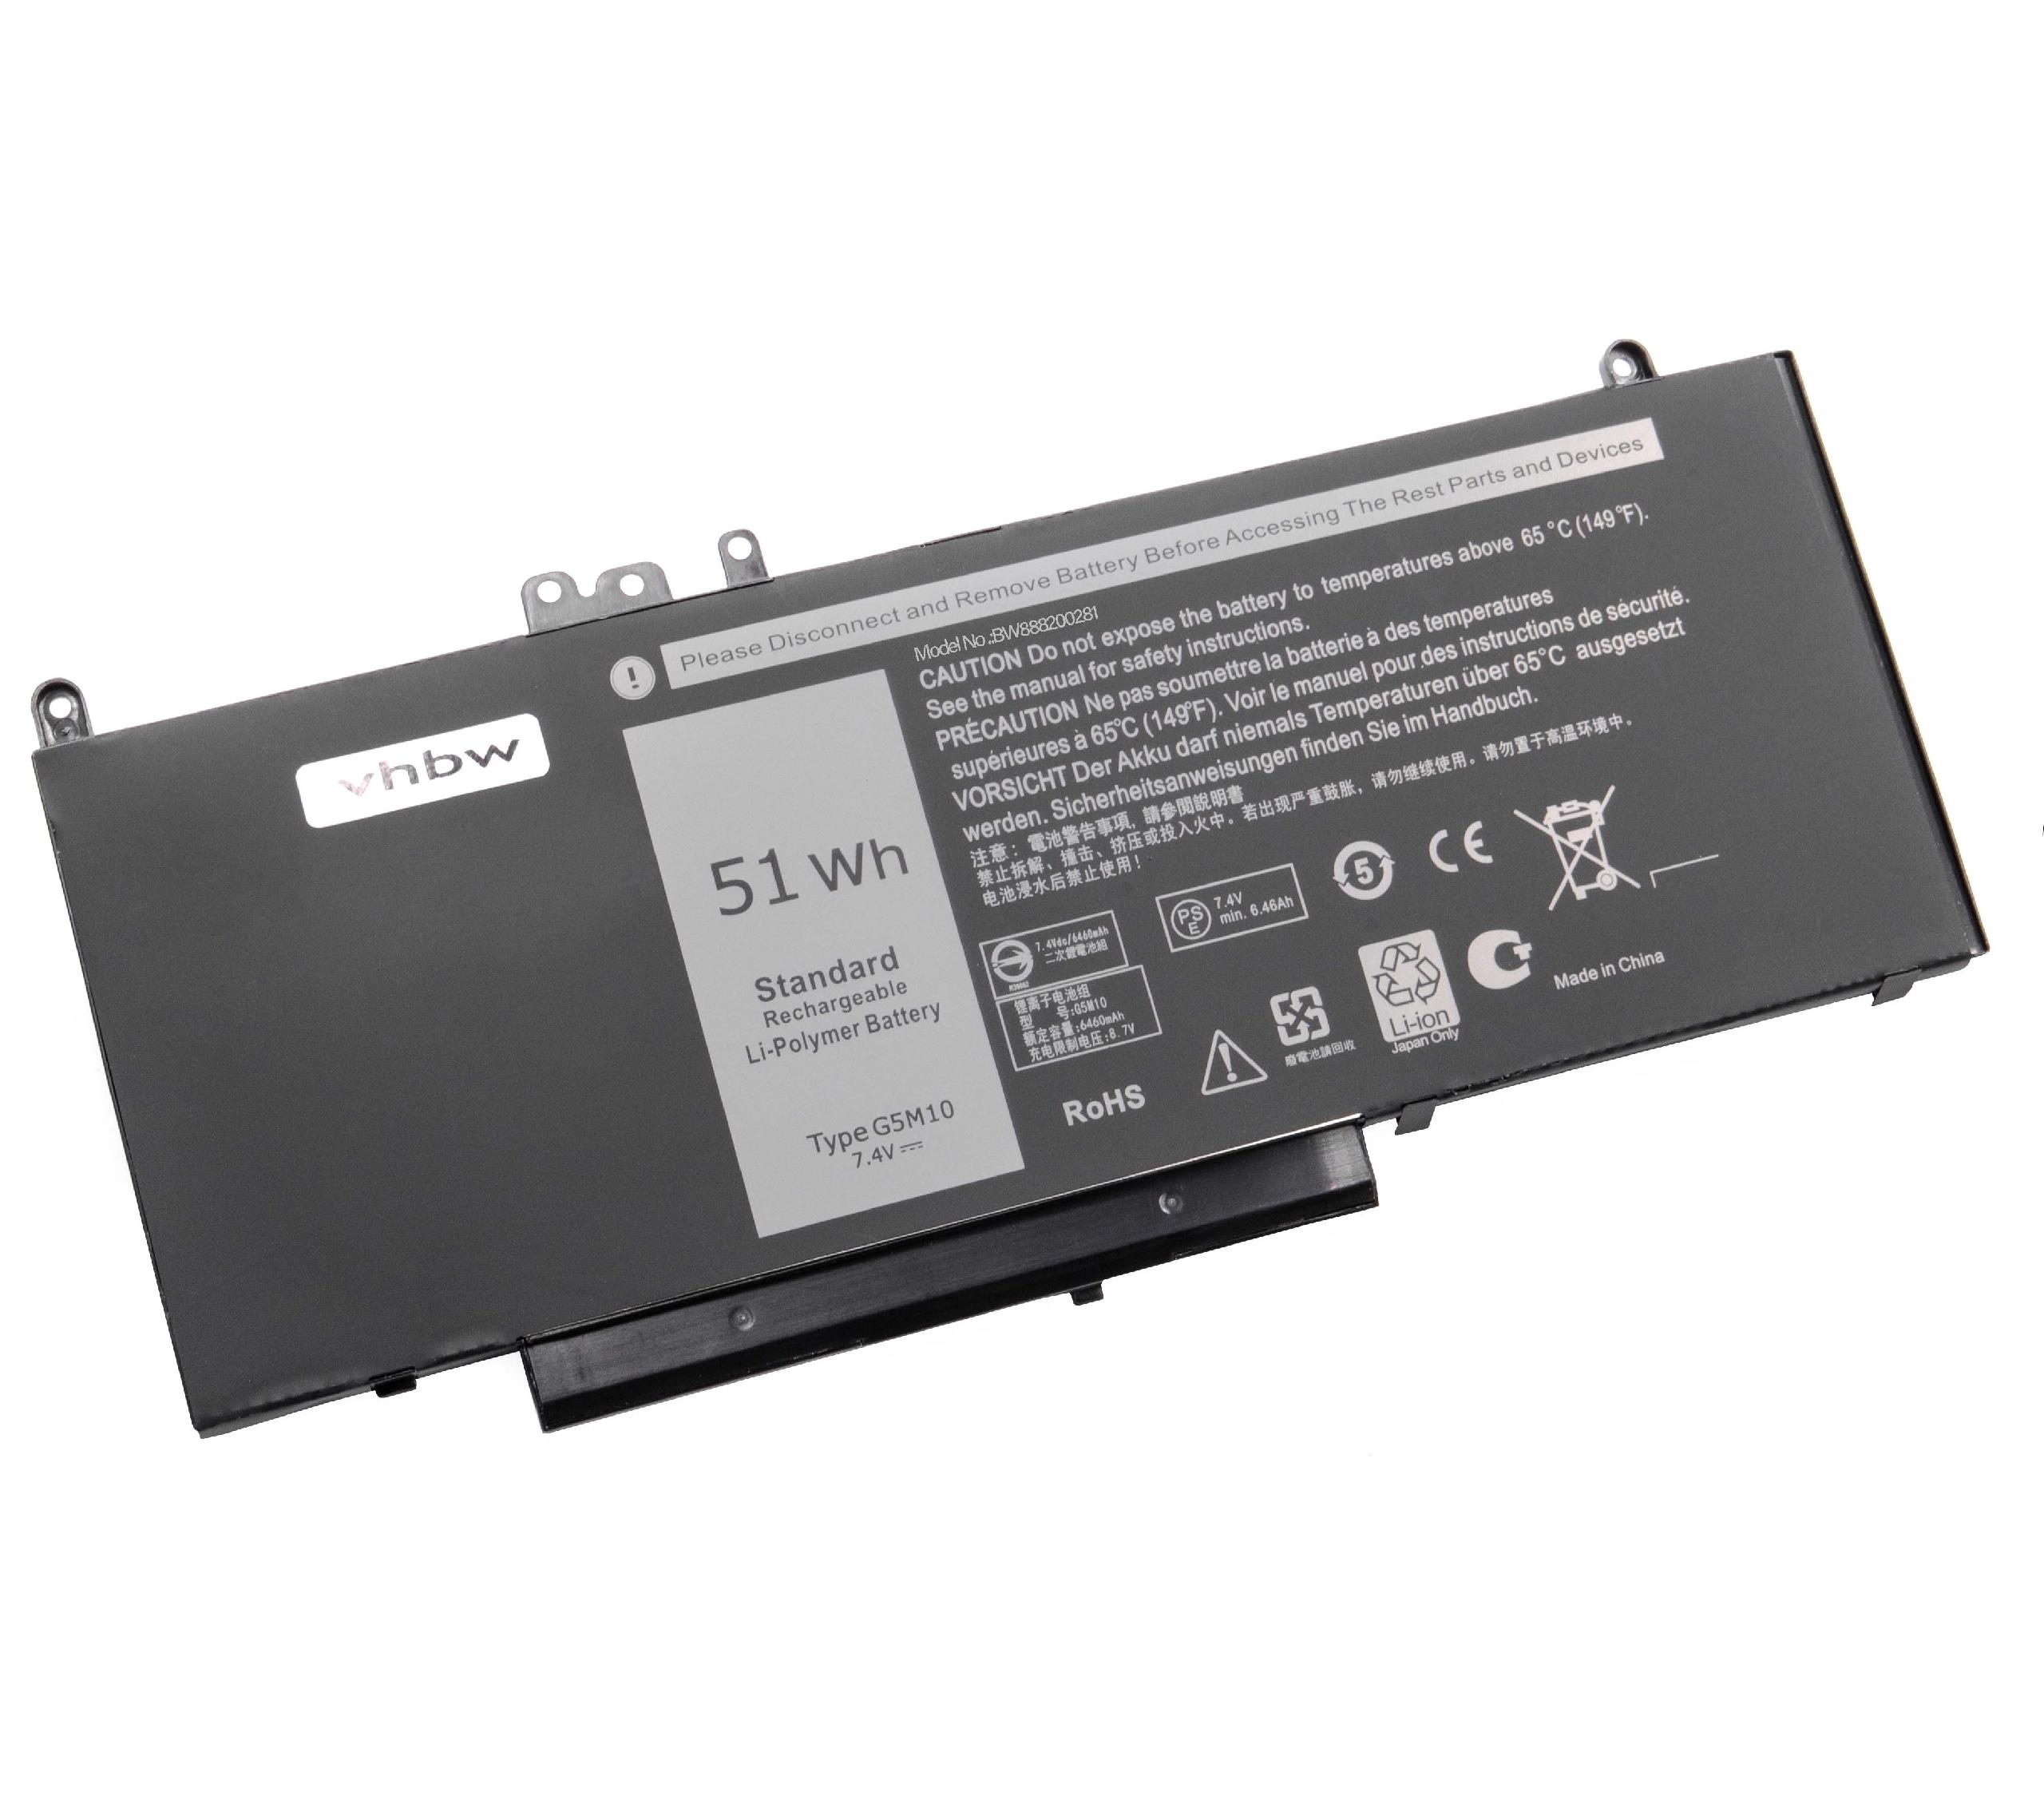 Batterie remplace Dell 0WYJC2, 0G5M10, 079VRK, 1KY05 pour ordinateur portable - 6800mAh 7,4V Li-polymère